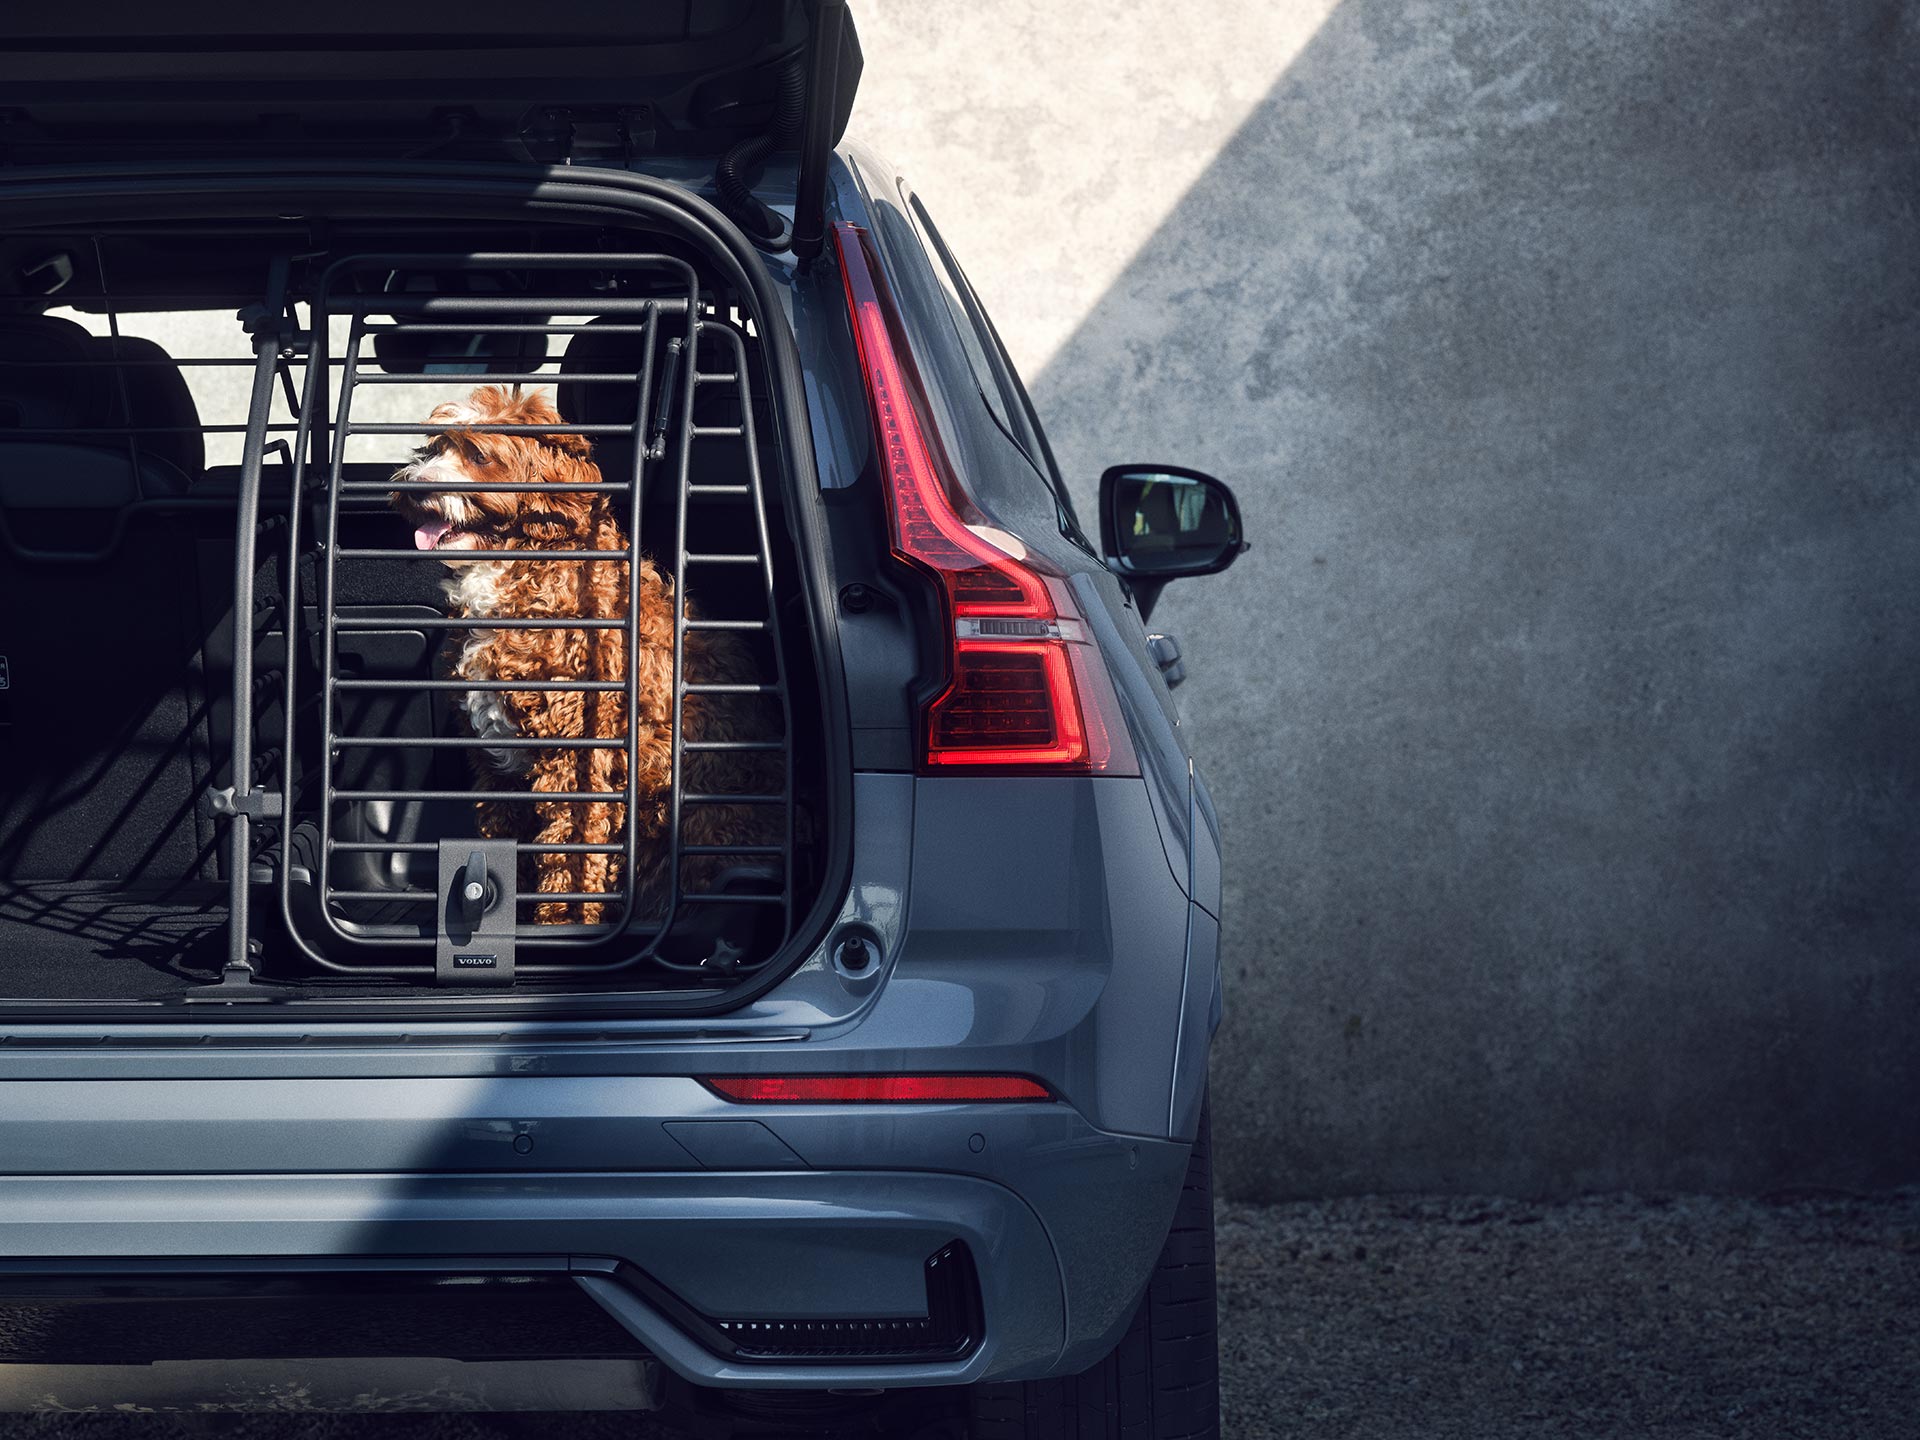 En kobberfarvet hund sidder i et sikkert hundebur, et tilbehør, der er specielt designet til sikkerhed og komfort for kæledyr, der er med ude at køre i Volvo-biler.